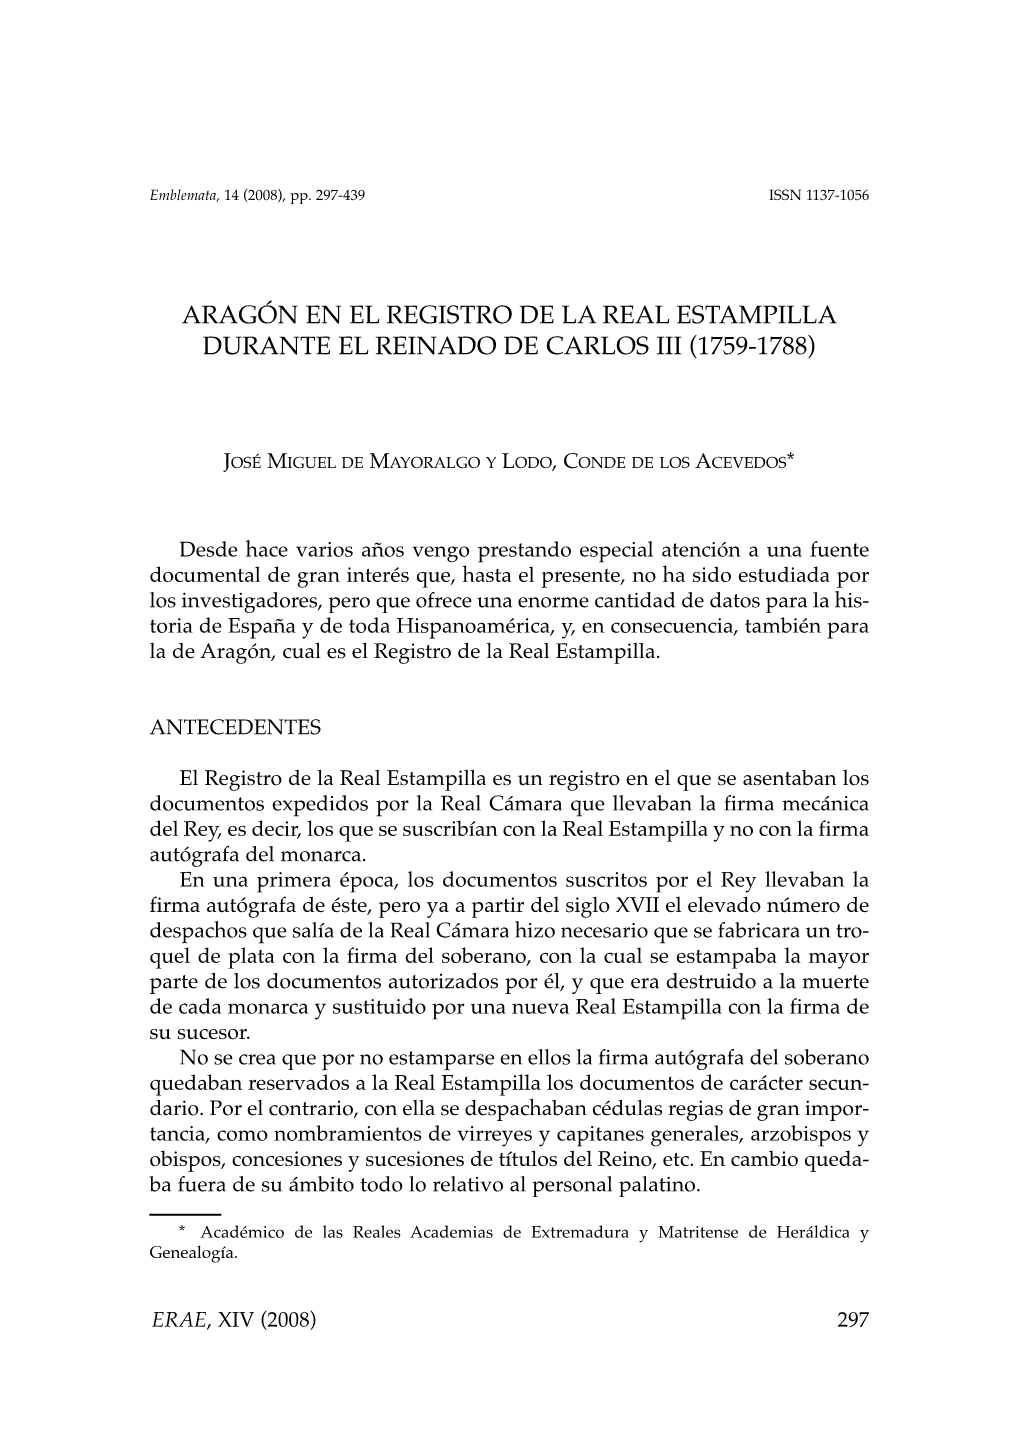 Aragón En El Registro De La Real Estampilla Durante El Reinado De Carlos Iii (1759-1788)